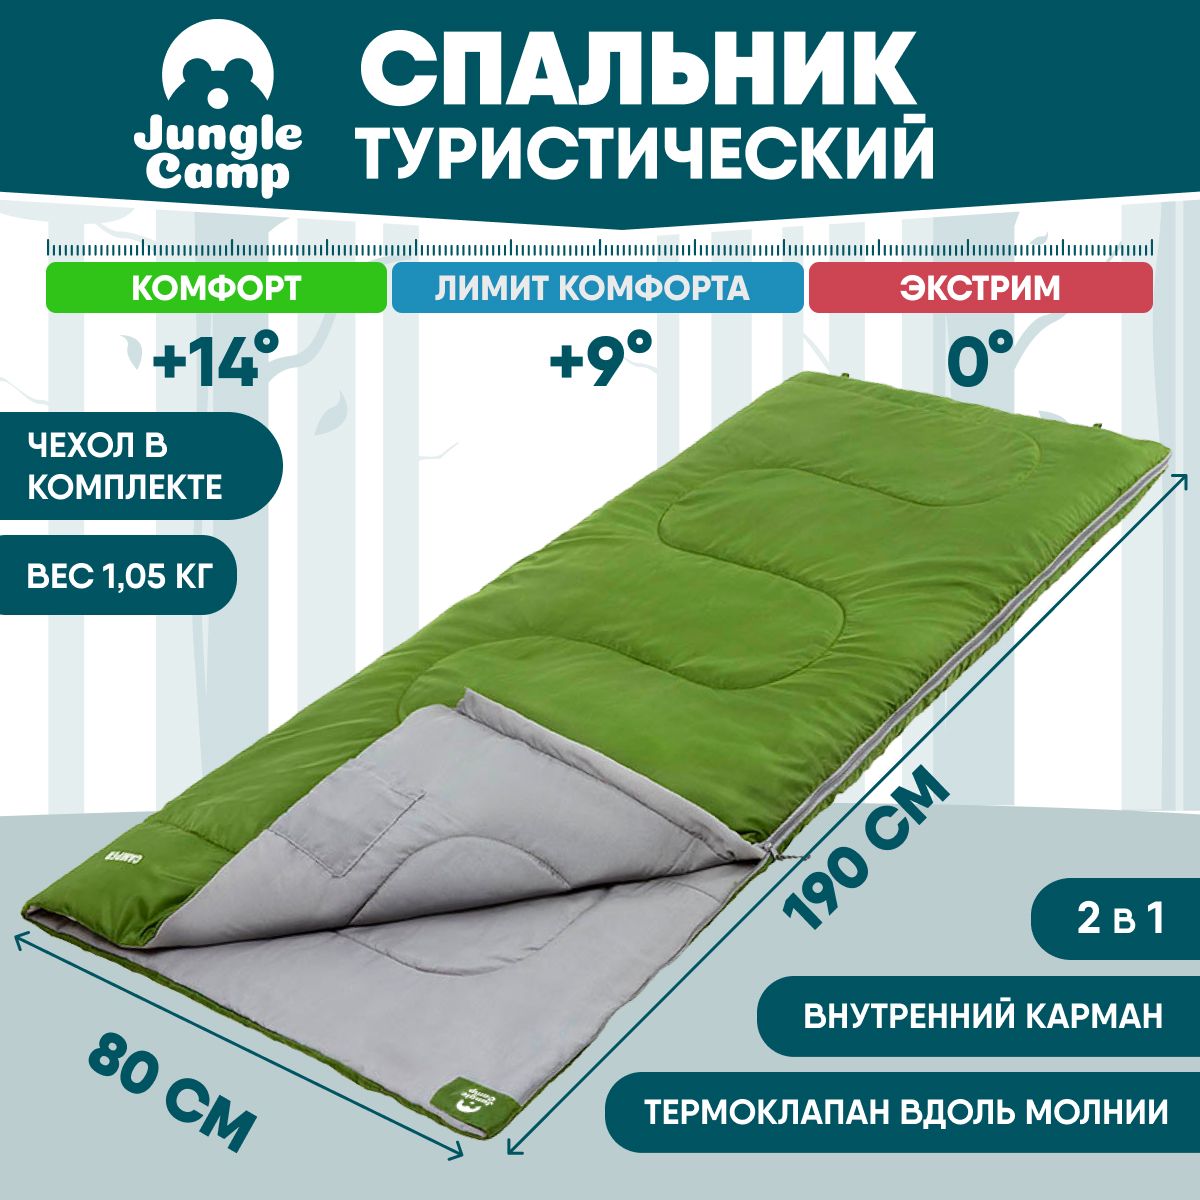 Спальный мешок Jungle Camp Camper зеленый, левый